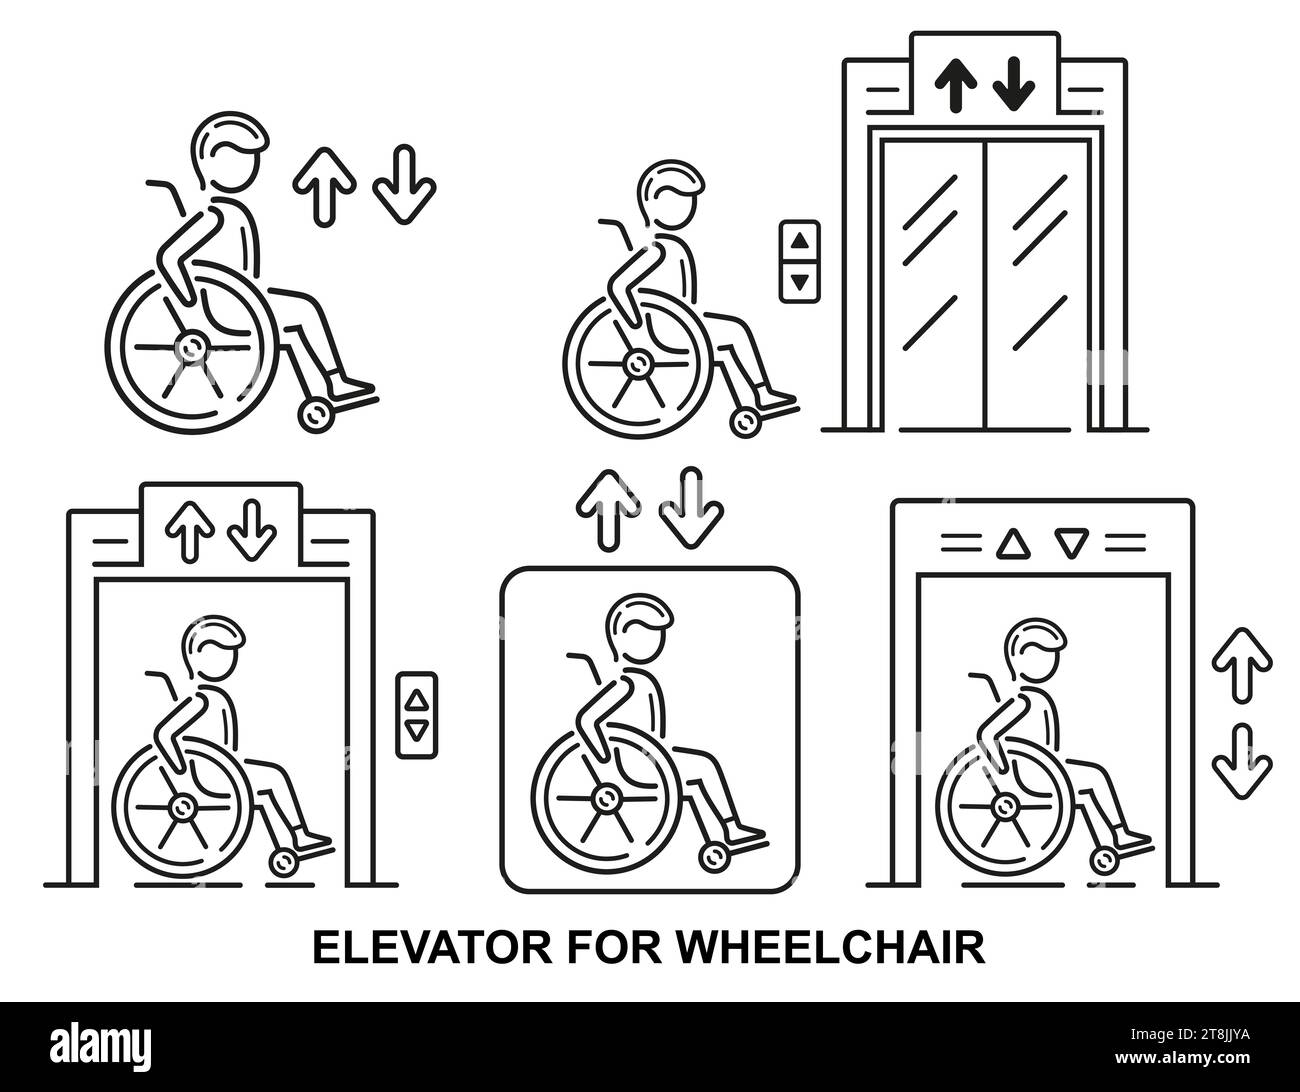 Barrierefreier Fahrstuhl, Treppenlift für Personen mit Behinderungen in Rollstuhllinien-Set. Transport durch Fußbodenpatienten im medizinischen Rollstuhlvektor Stock Vektor